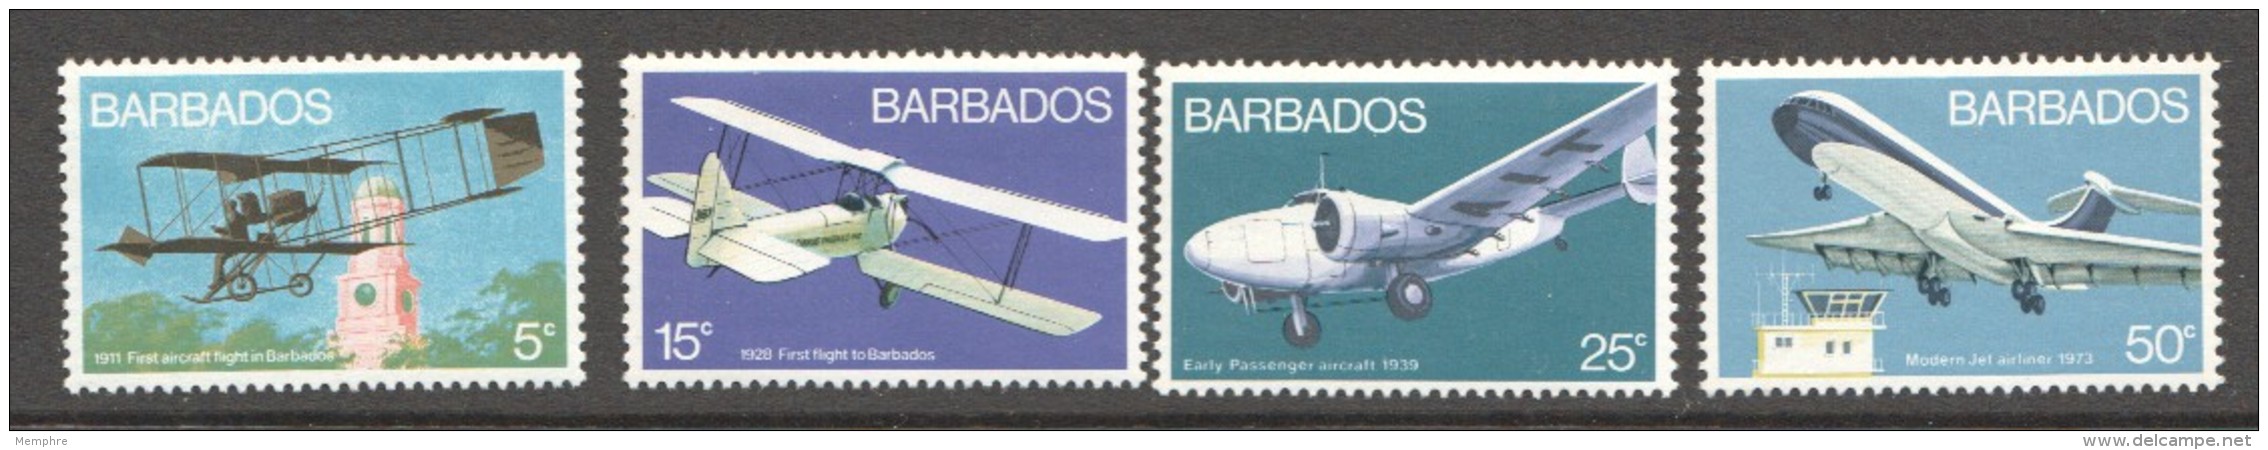 BARBADOS  1973  Aircrafts  Set Of 4  UM - MNh - Barbados (1966-...)